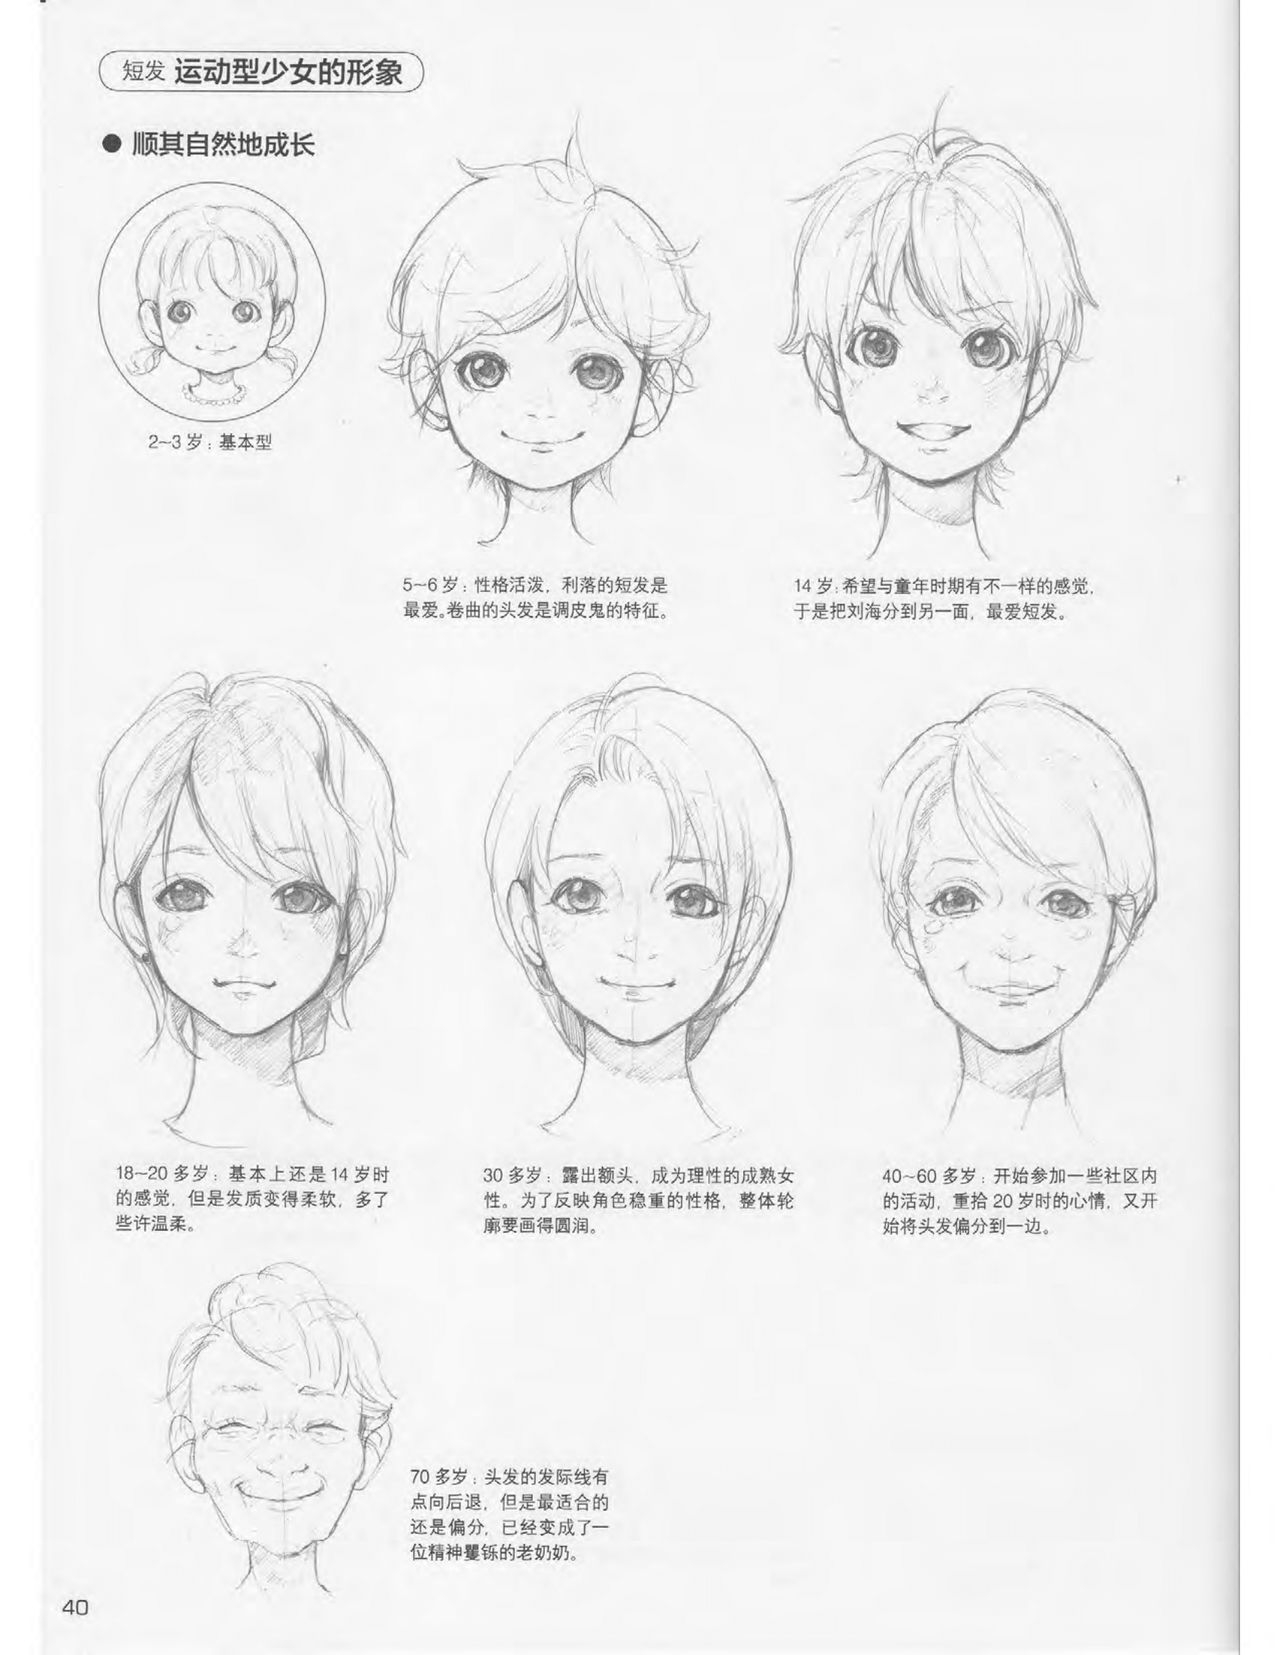 Japanese Manga Master Lecture 3: Lin Akira and Kakumaru Maru Talk About Glamorous Character Modeling 40